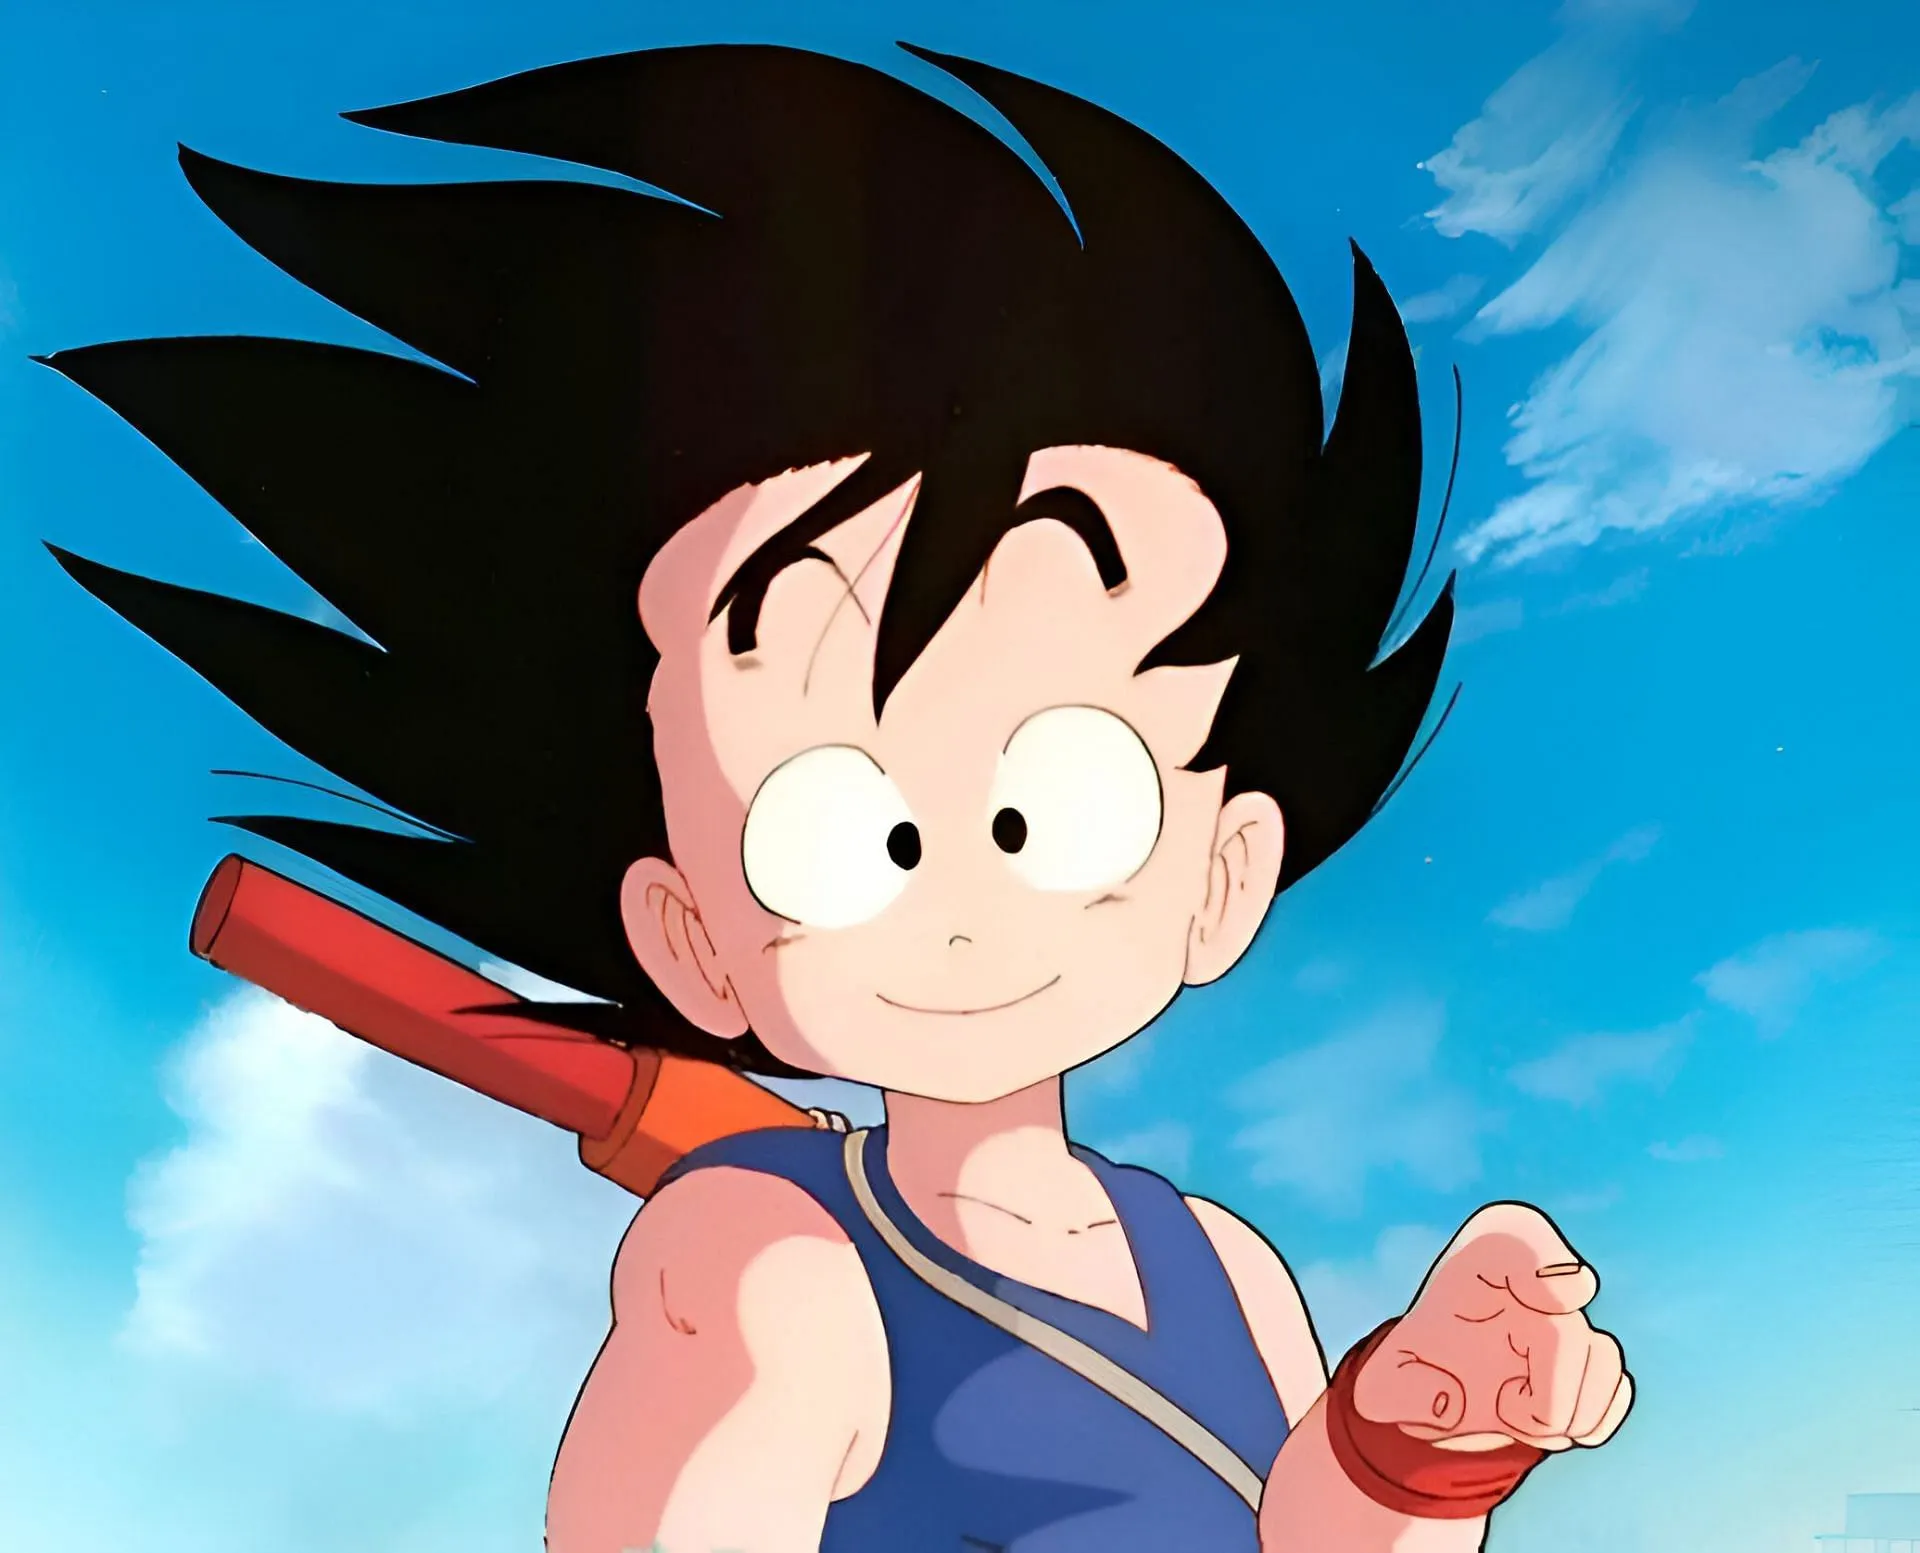 Son Goku como se ve en el anime Dragon Ball (Imagen vía Toei Animation)